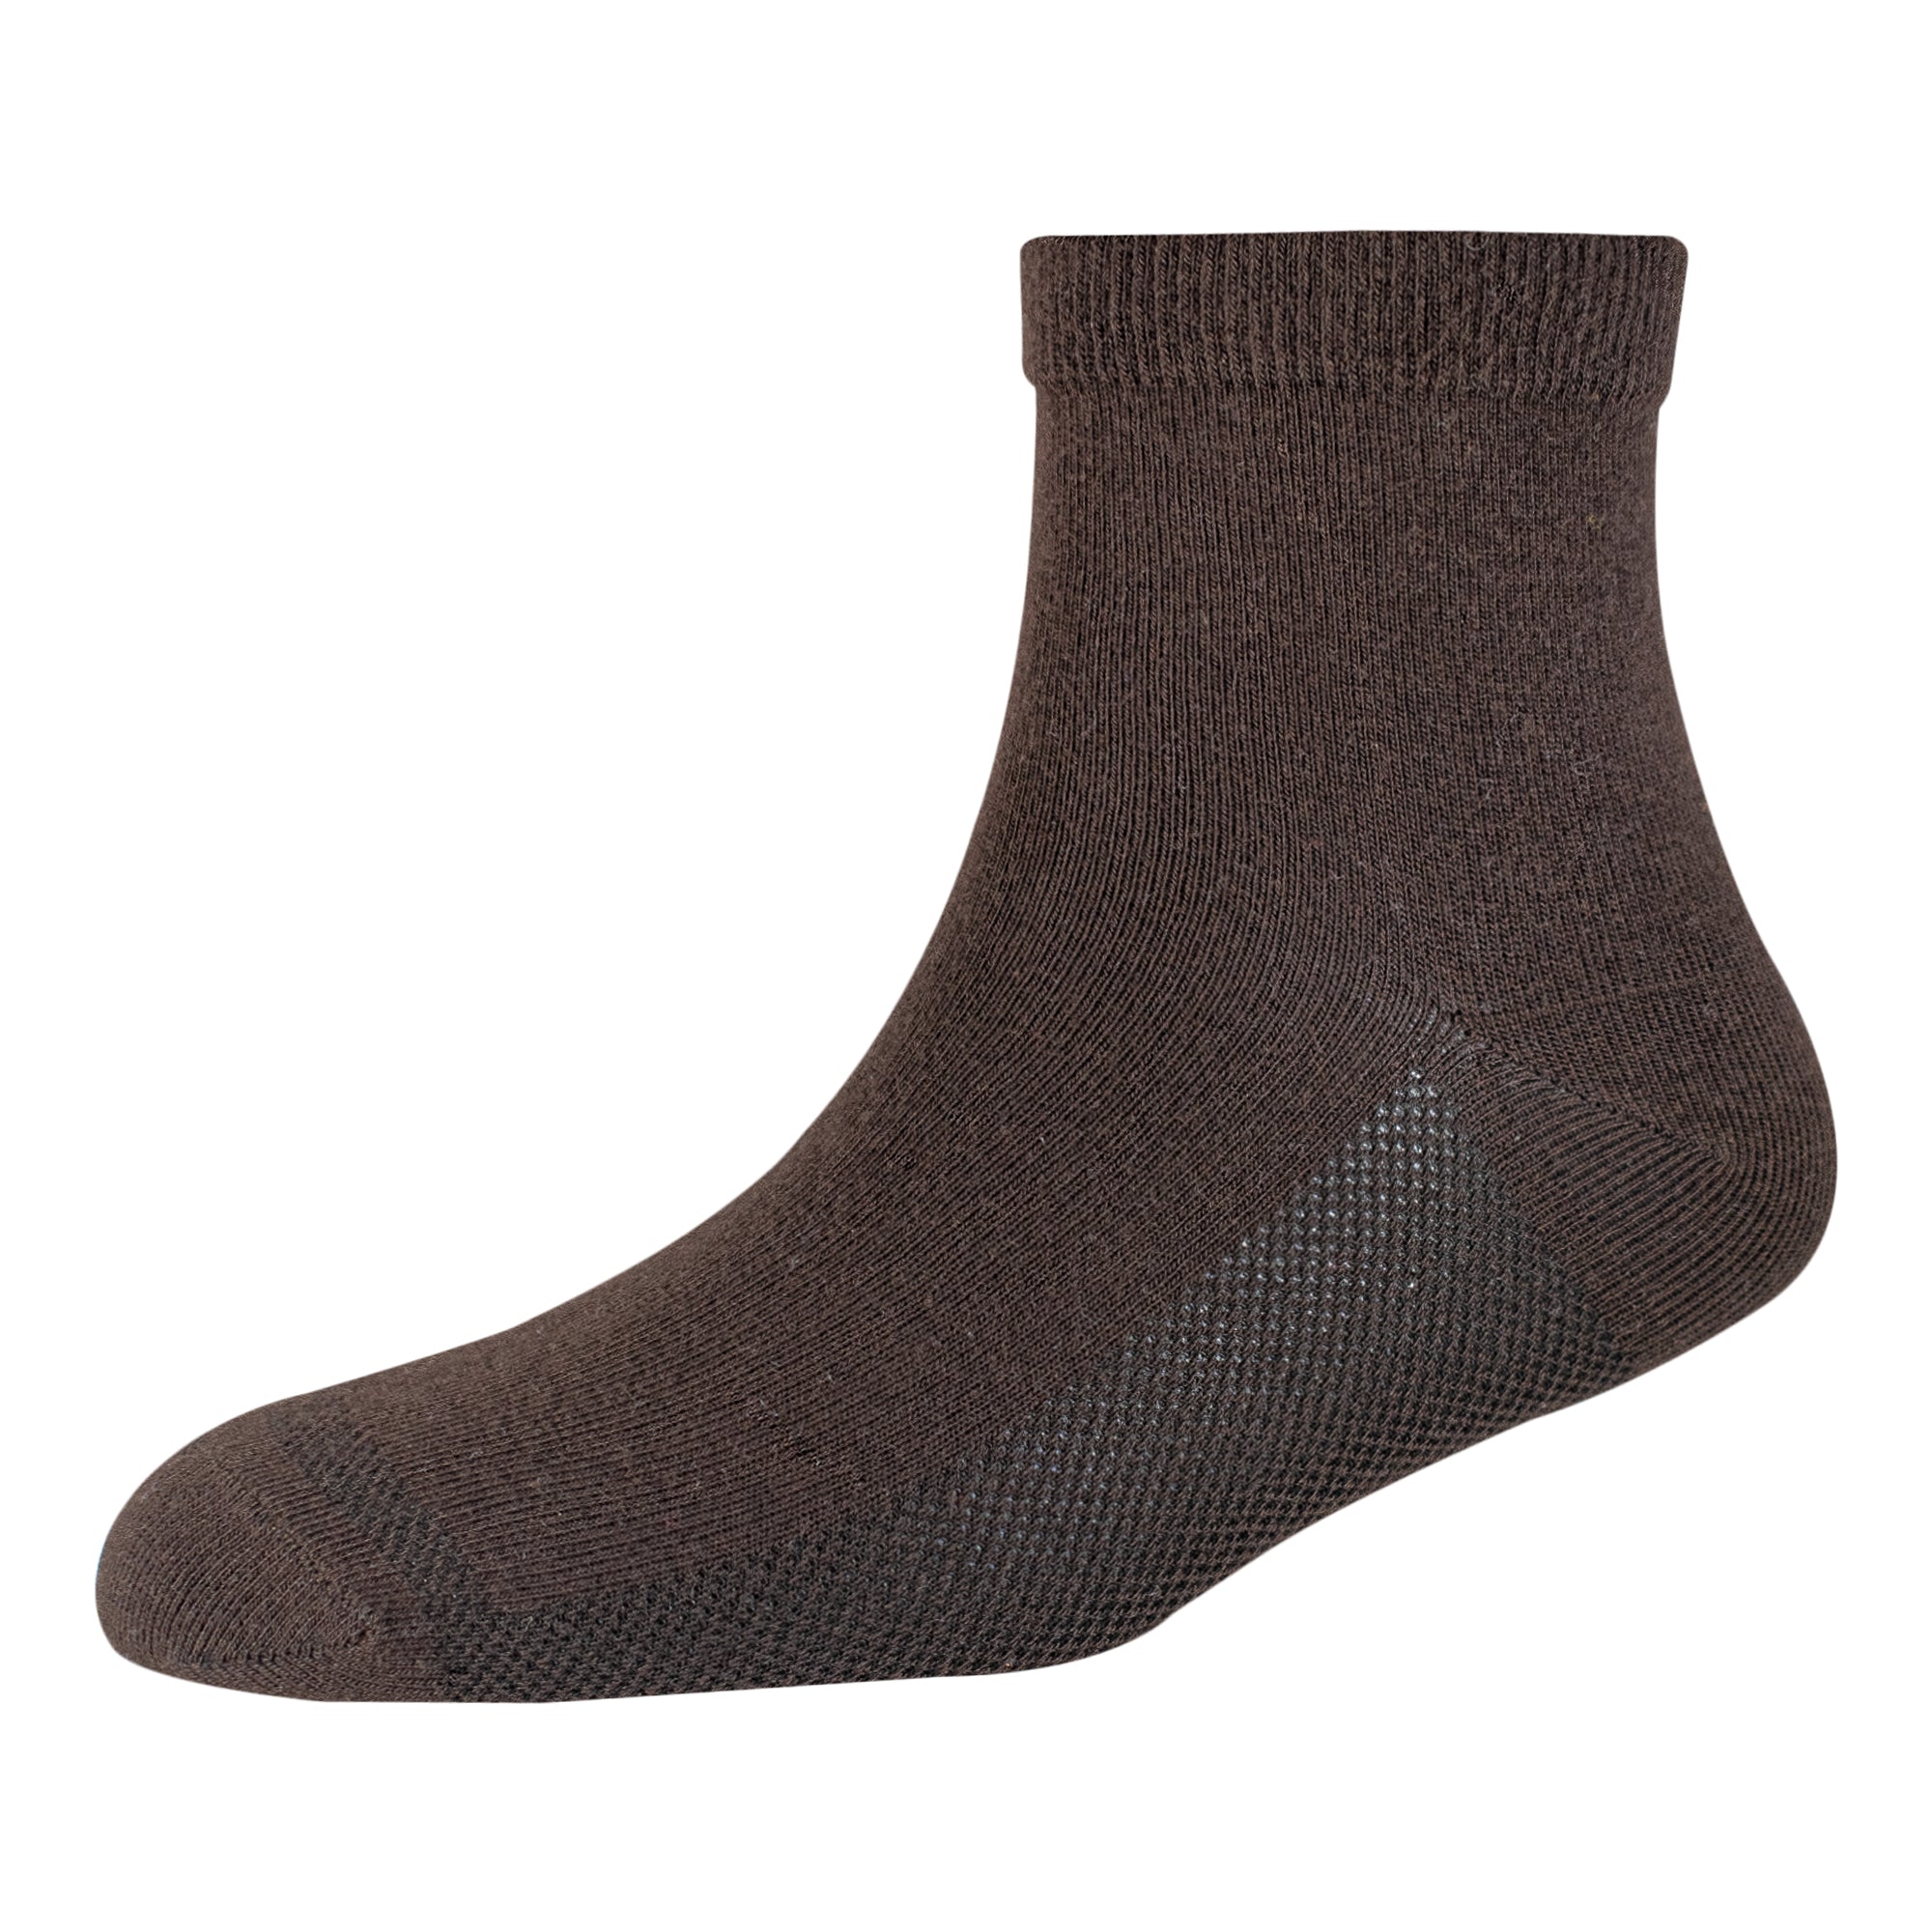 Men's YW-M1-2143 Summer Socks Ankle